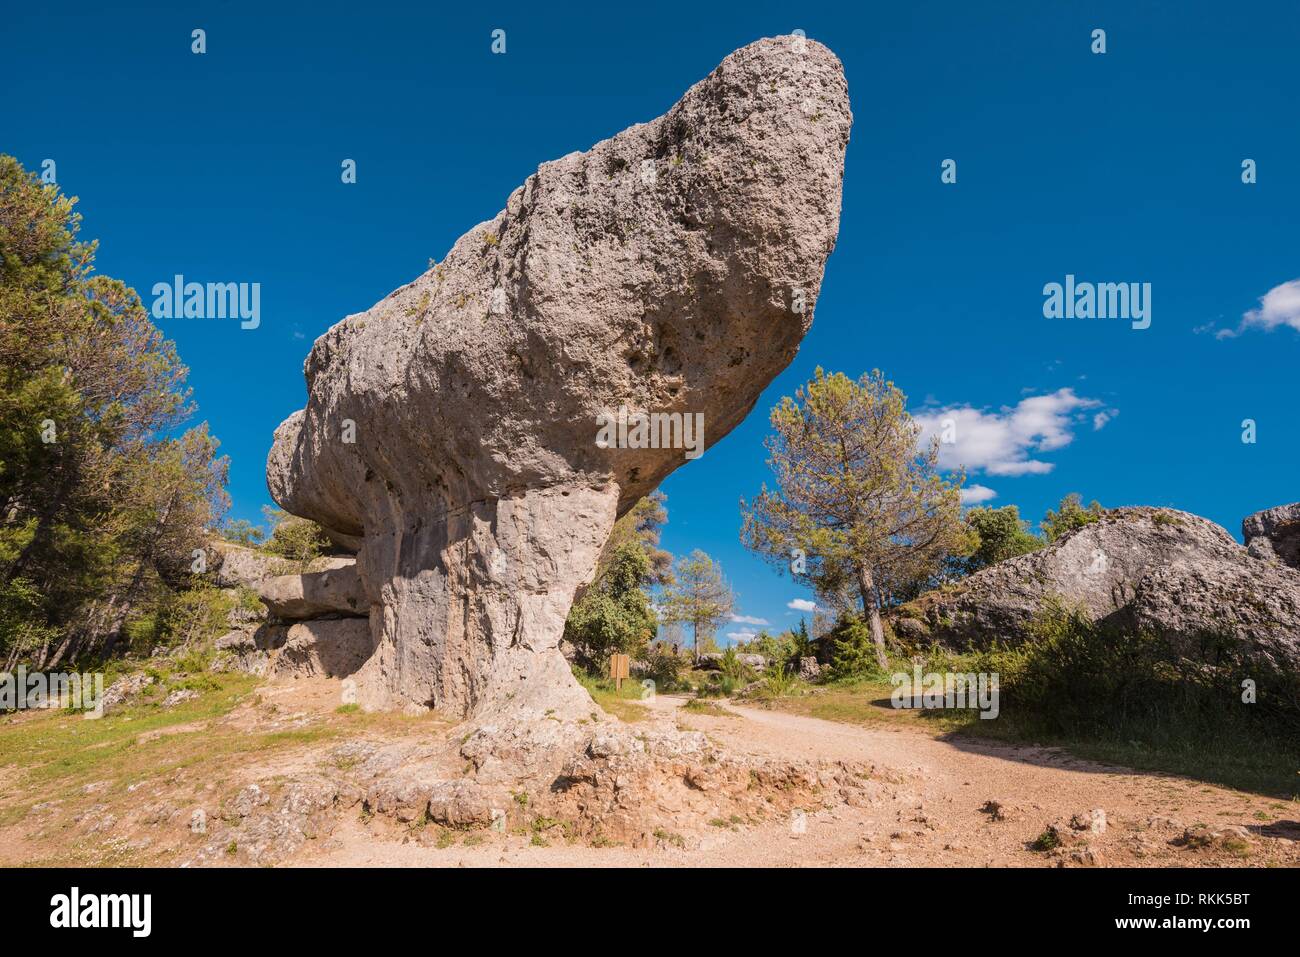 La Ciudad Encantada. El parque natural de la ciudad encantada, grupo de formas crapicious rocas calizas en Cuenca, España. Foto de stock